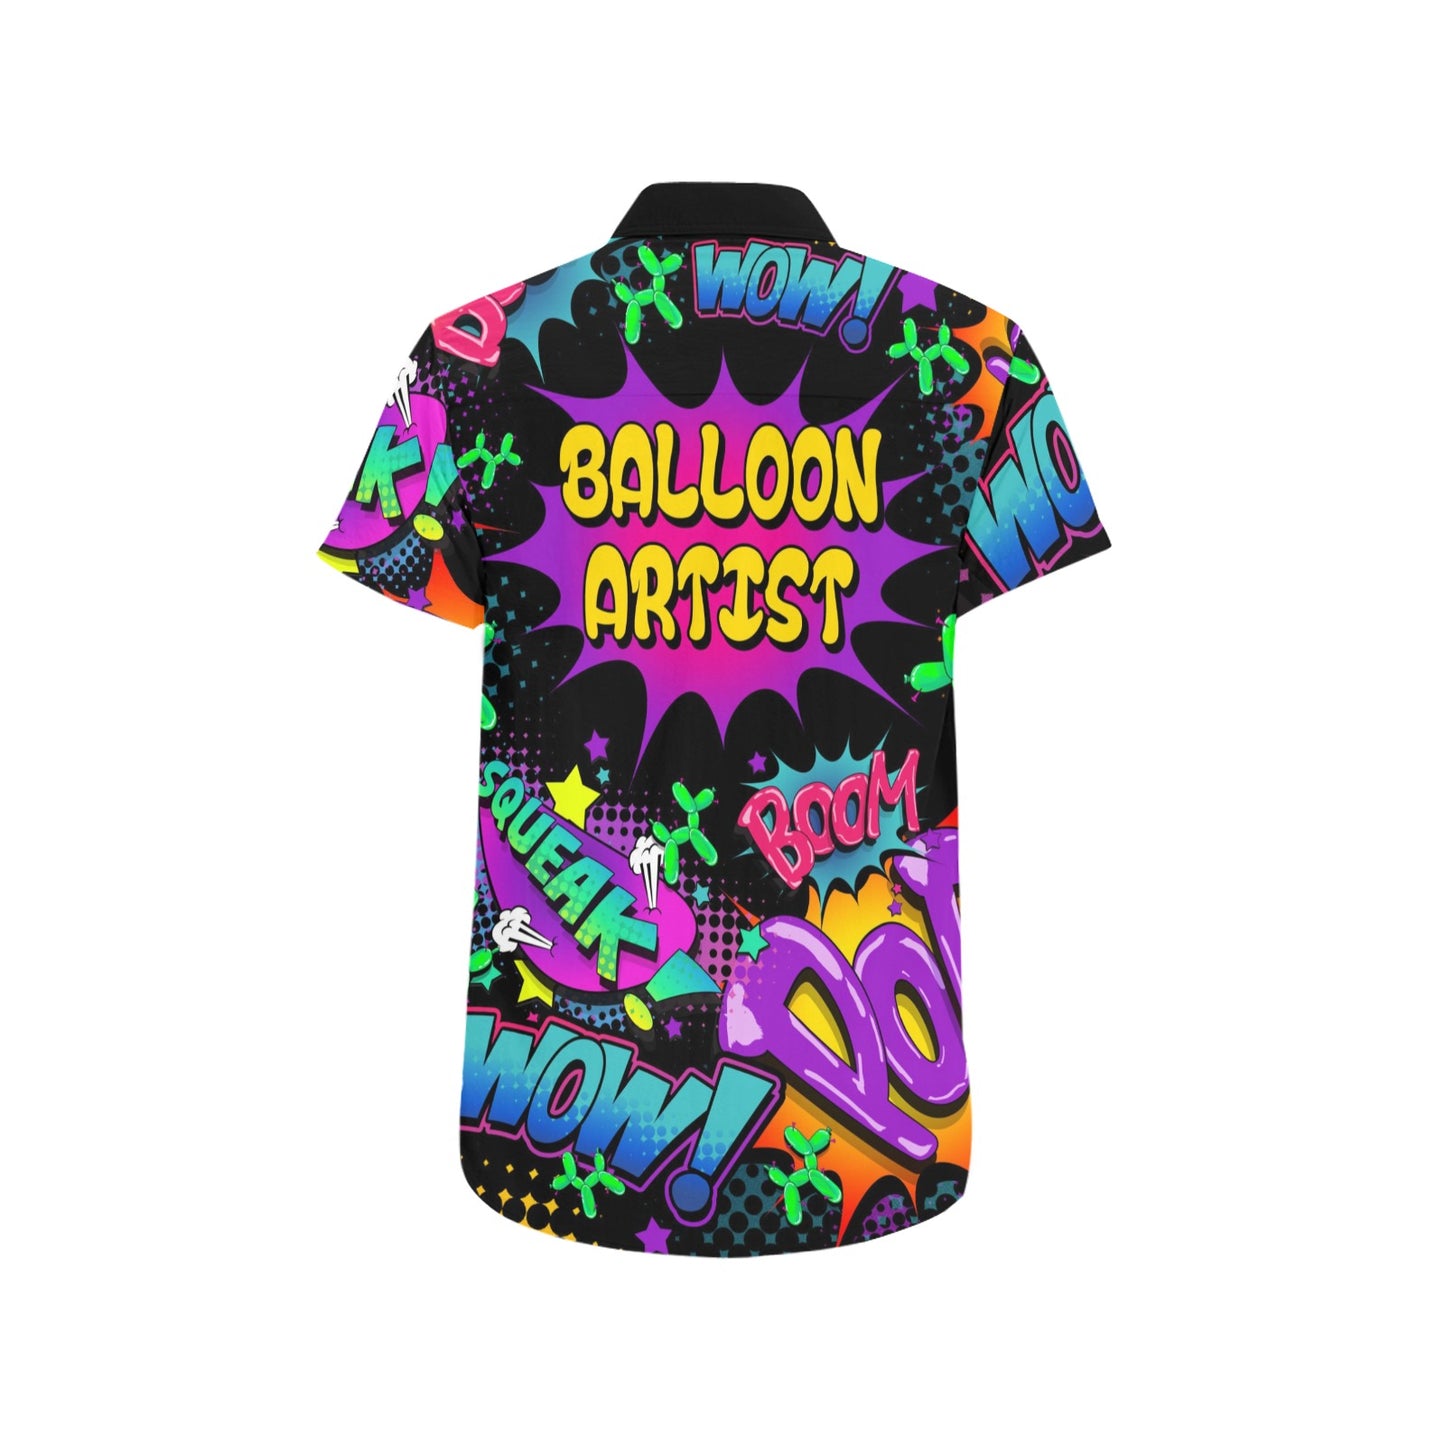 Balloon Artist Shirt colourful and fun